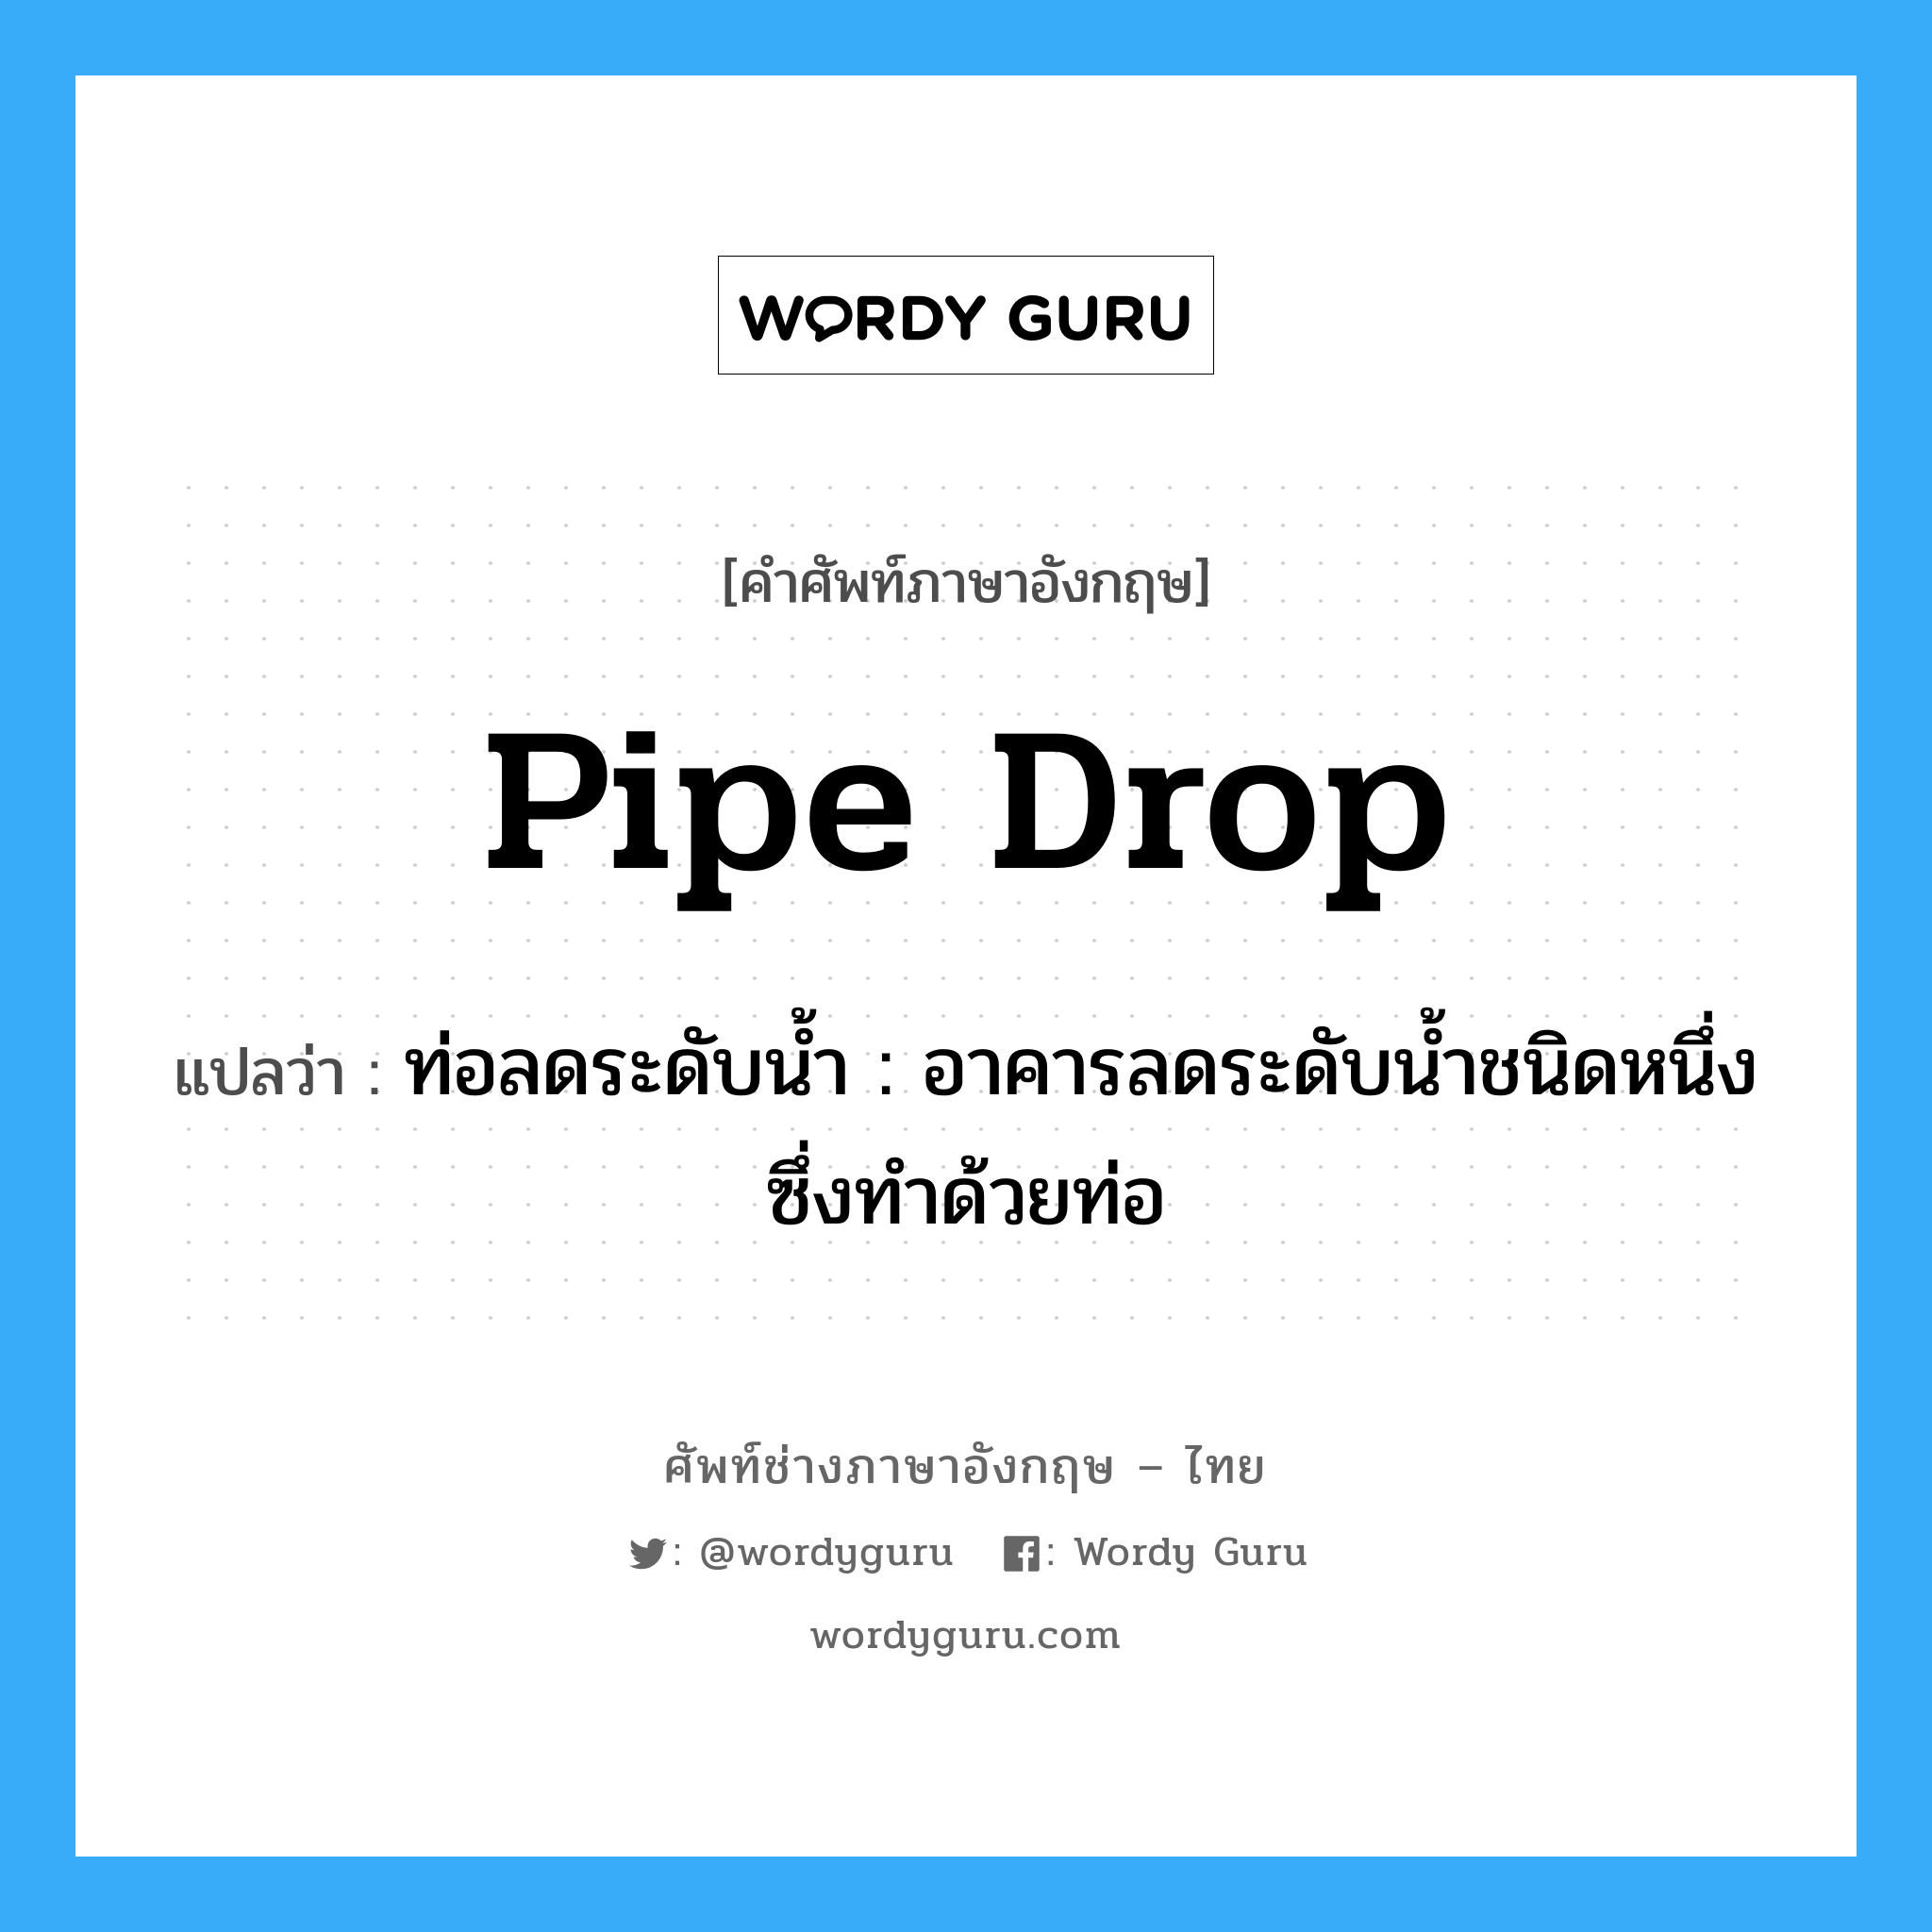 pipe drop แปลว่า?, คำศัพท์ช่างภาษาอังกฤษ - ไทย pipe drop คำศัพท์ภาษาอังกฤษ pipe drop แปลว่า ท่อลดระดับน้ำ : อาคารลดระดับน้ำชนิดหนึ่งซึ่งทำด้วยท่อ